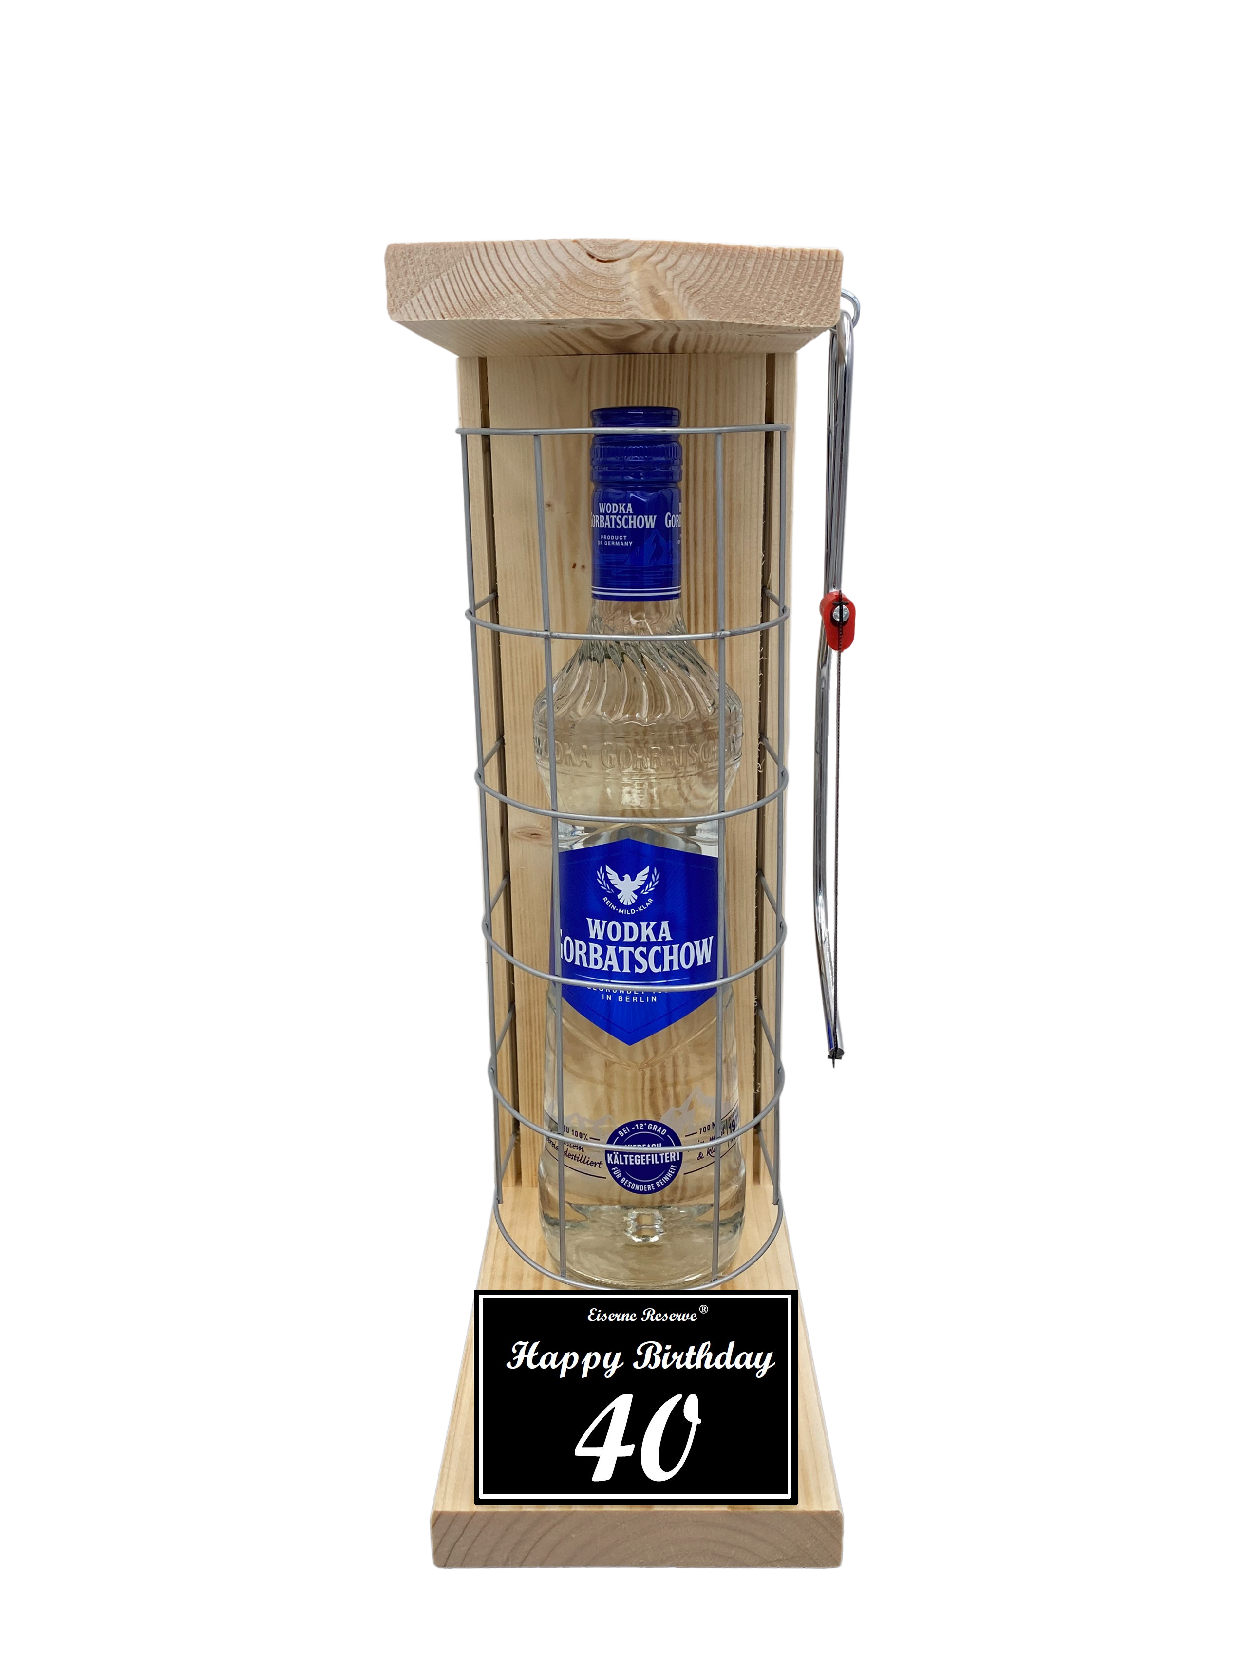 Wodka Geschenk zum 40 Geburtstag - Eiserne Reserve Gitterkäfig